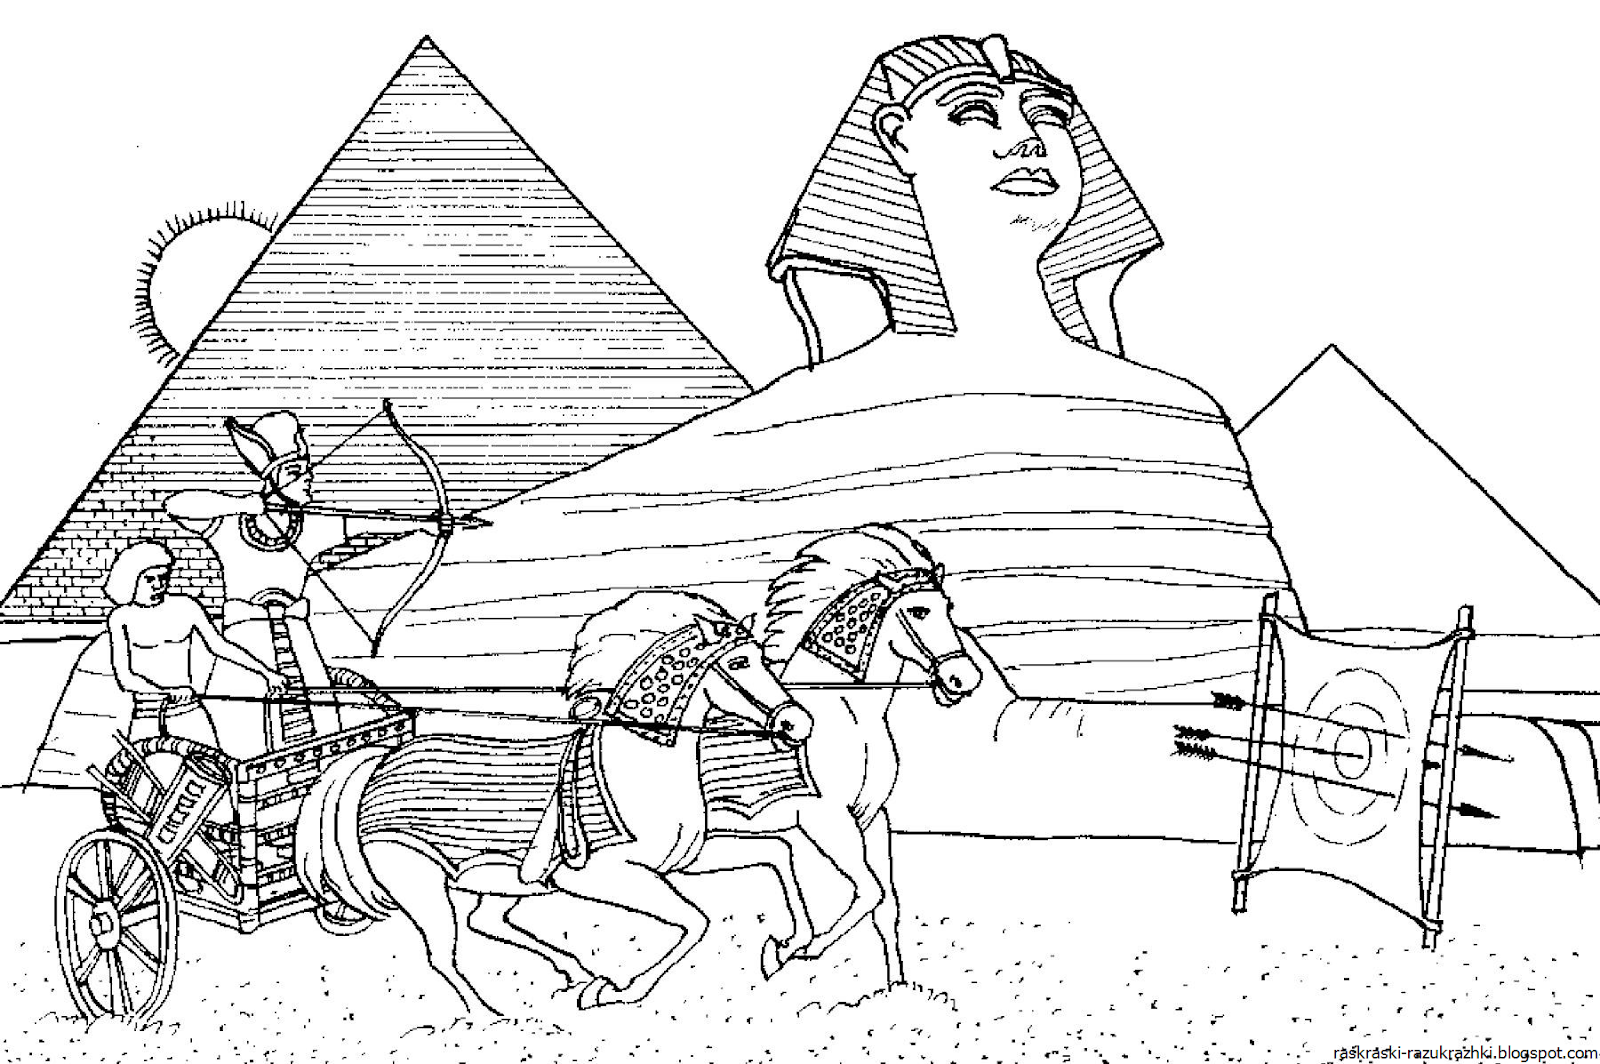 7 Чудес света пирамида Хеопса рисунок. Пирамида Хеопса семь чудес света раскраска для детей. Египетские пирамиды в древнем Египте зарисовки. Чудеса света пирамида Хеопса раскраска.